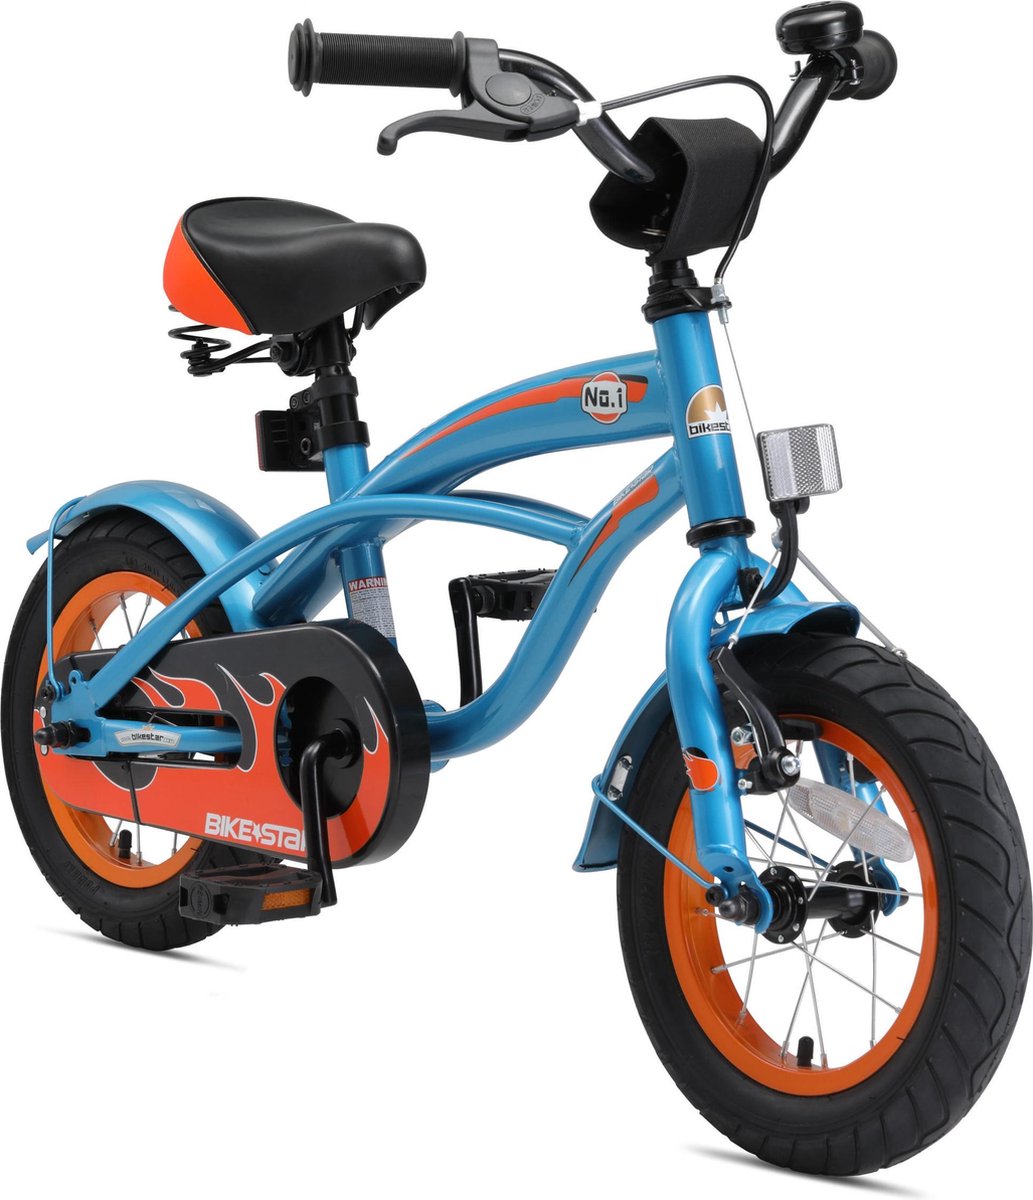 Bikestar 12 inch Cruiser kinderfiets blauw